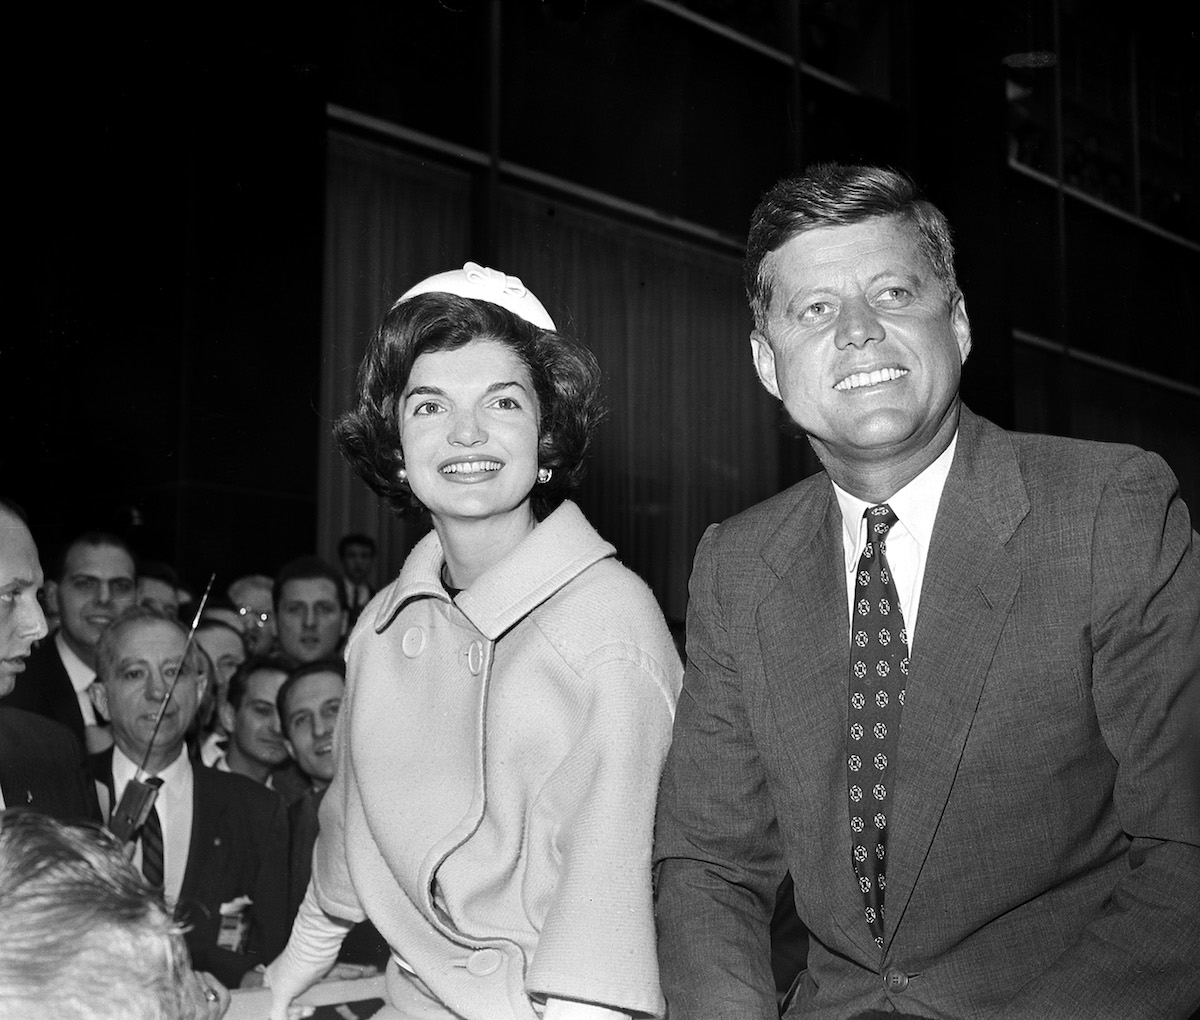 Πώς η Τζάκι πληρώθηκε με εκατομμύρια για να παριστάνει την τέλεια σύζυγο του JFK